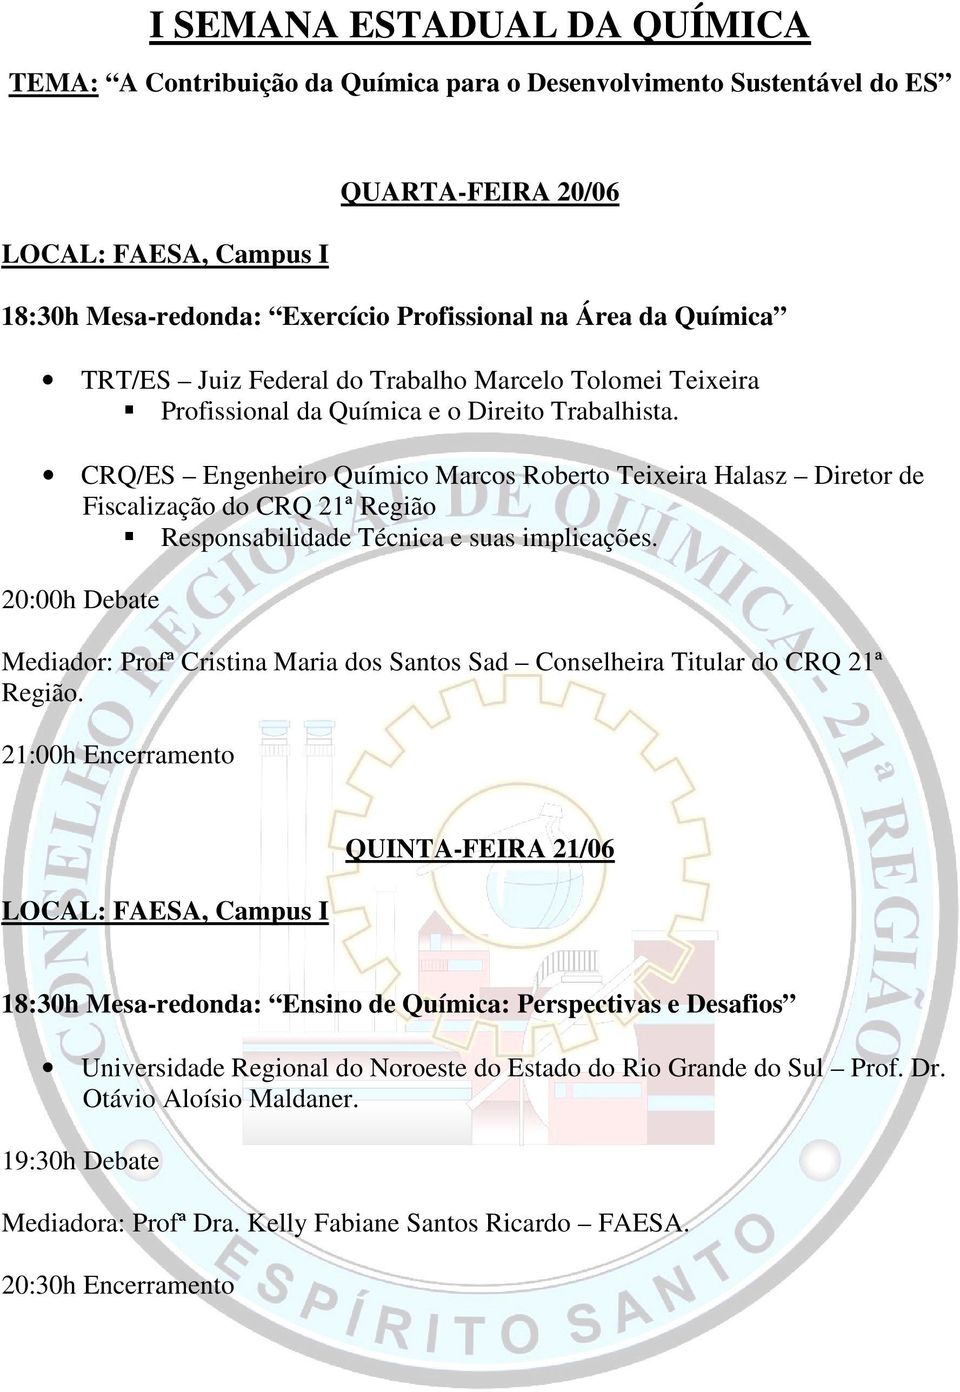 Mediador: Profª Cristina Maria dos Santos Sad Conselheira Titular do CRQ 21ª Região.